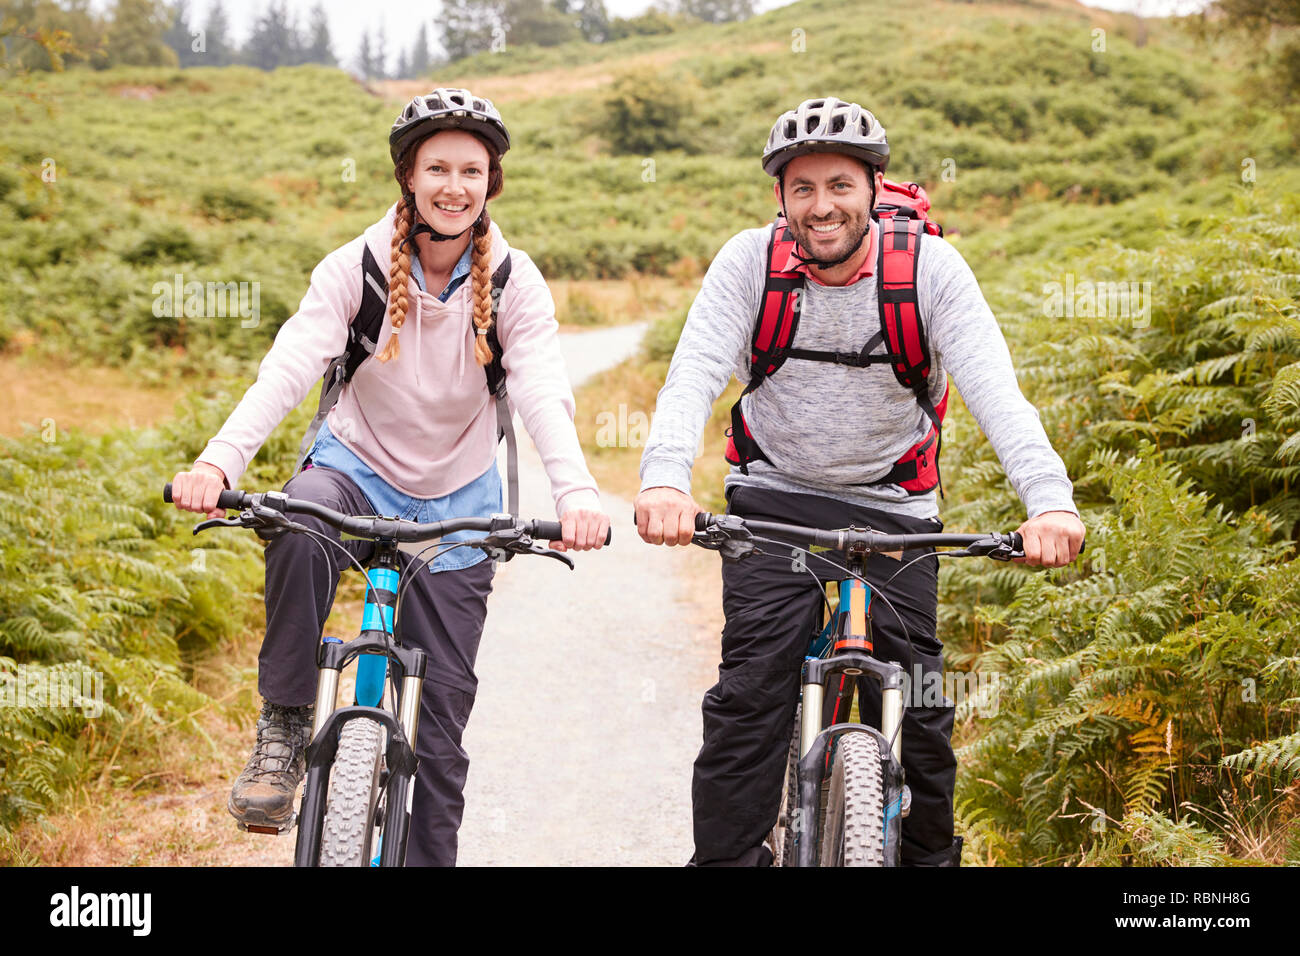 Junge Erwachsene paar Riding Mountain bikes in einem Feldweg, an der Kamera suchen, Nahaufnahme Stockfoto